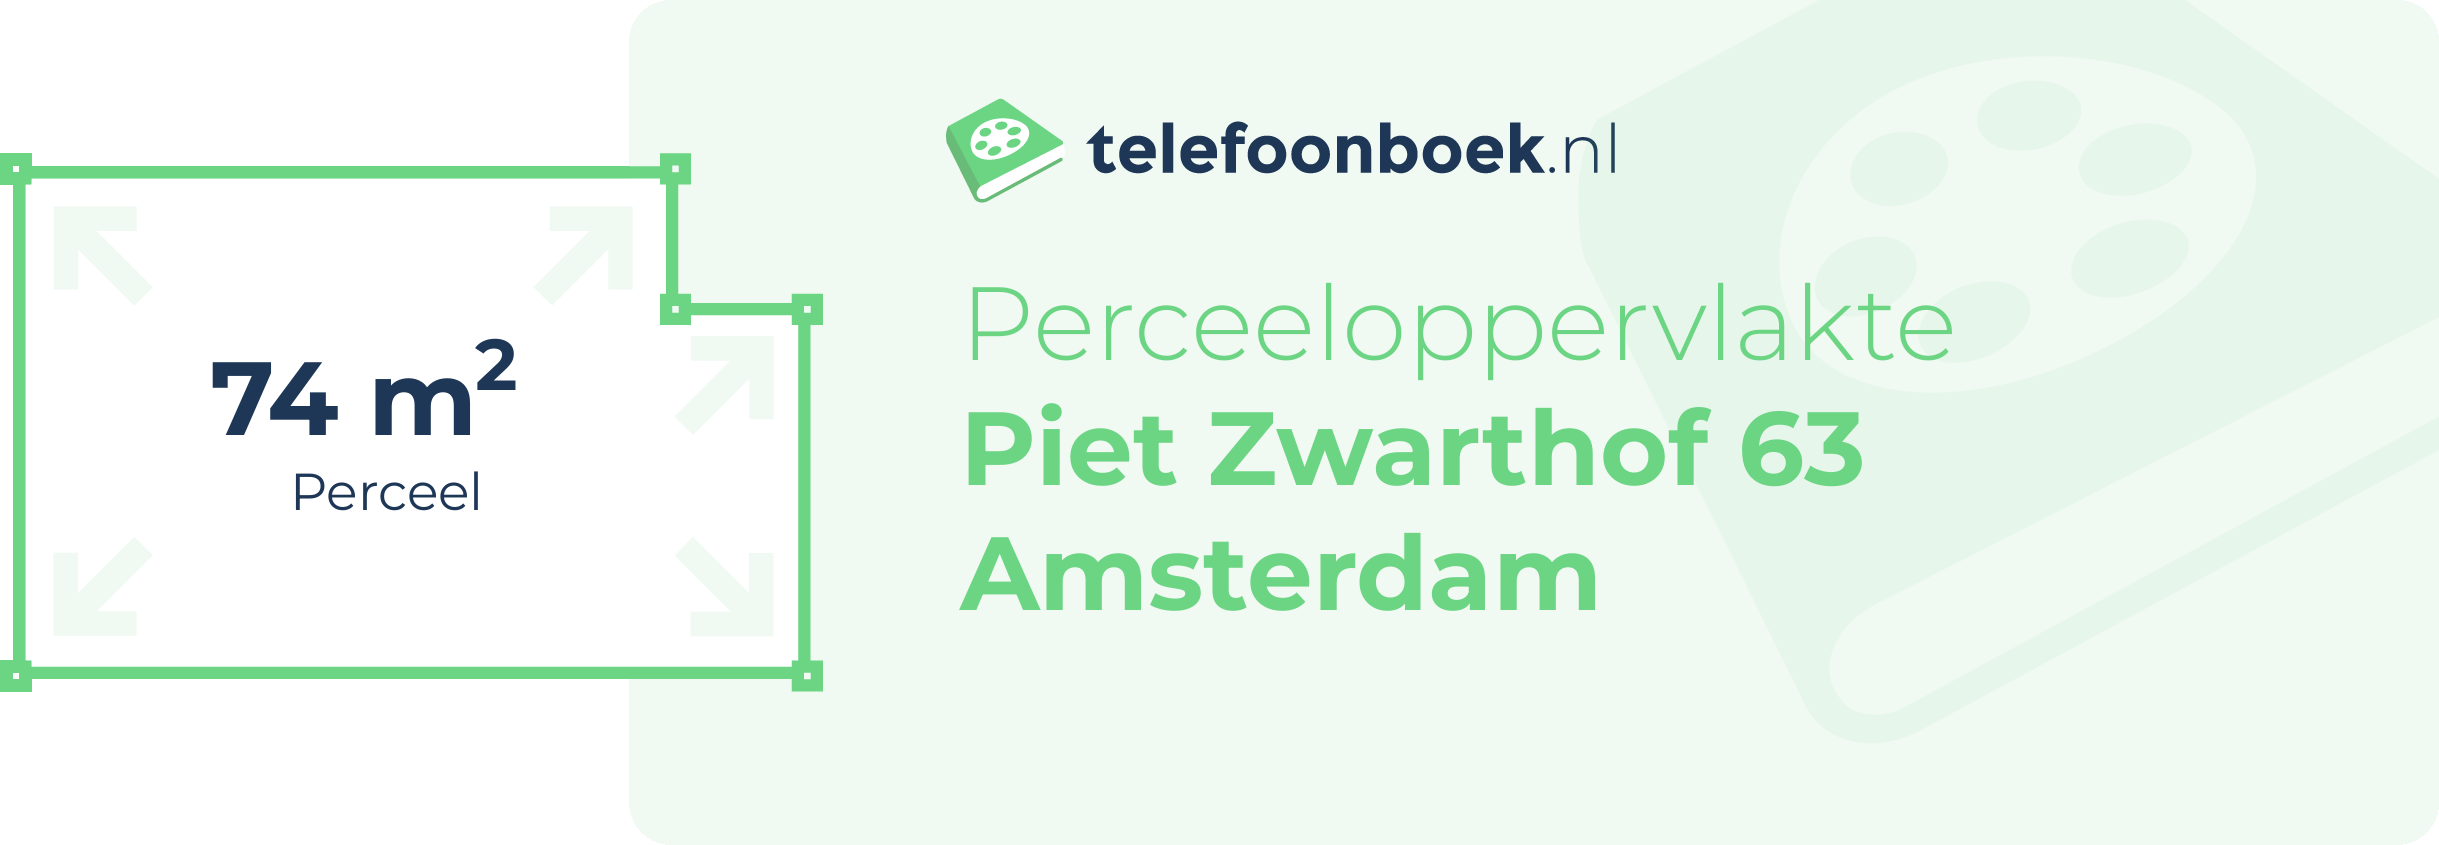 Perceeloppervlakte Piet Zwarthof 63 Amsterdam